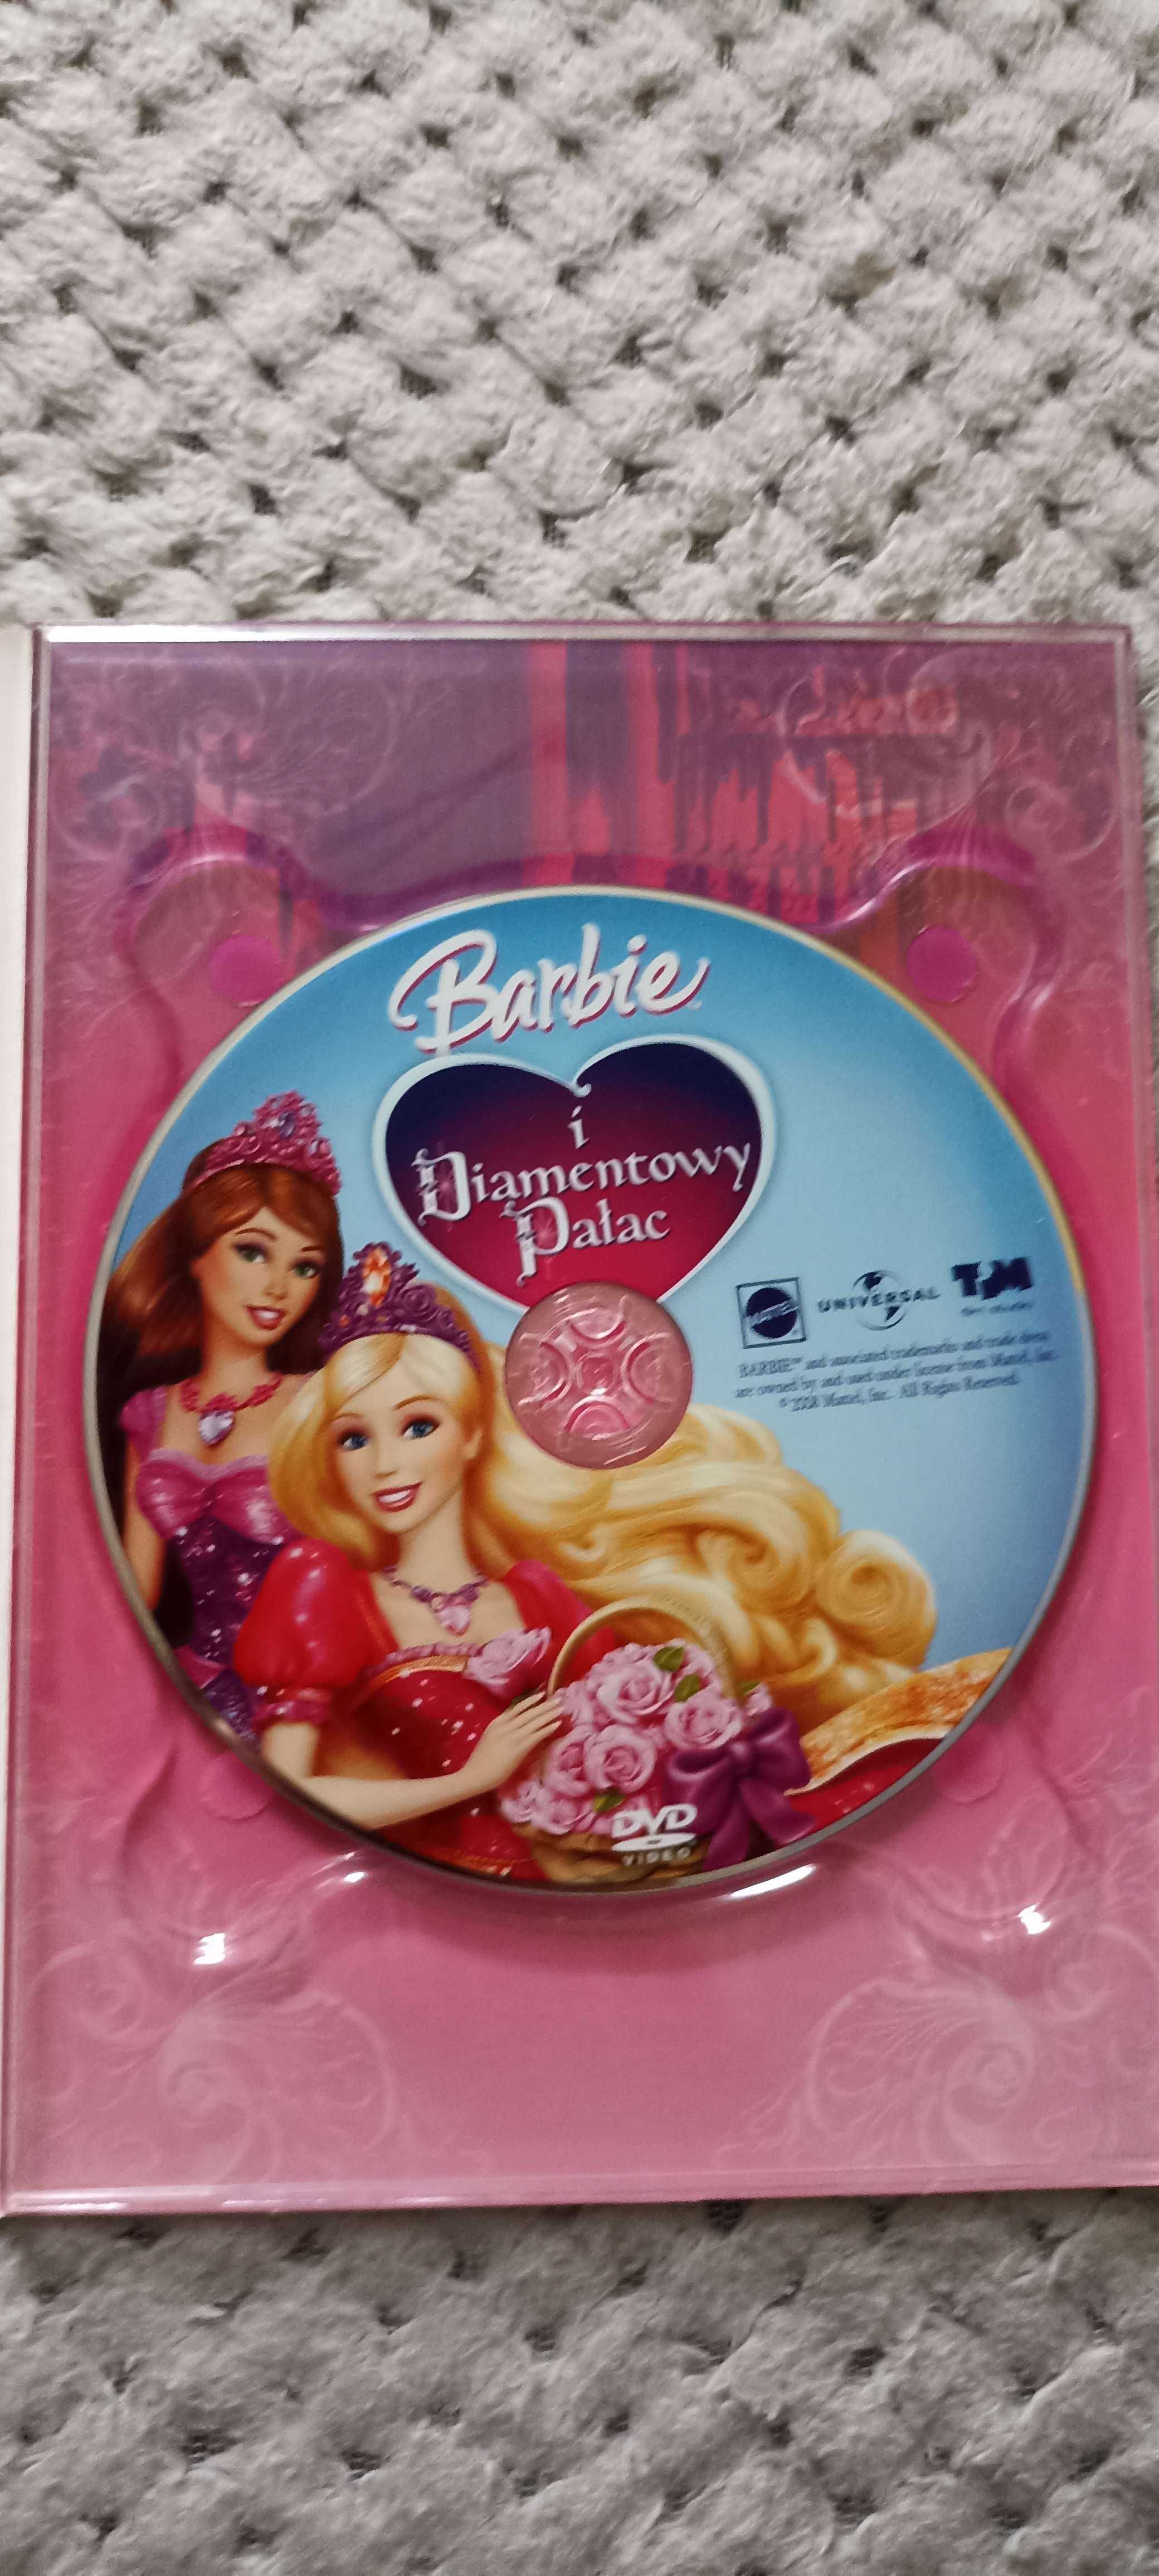 Barbie i diamentowy pałac Płyta DVD + książka